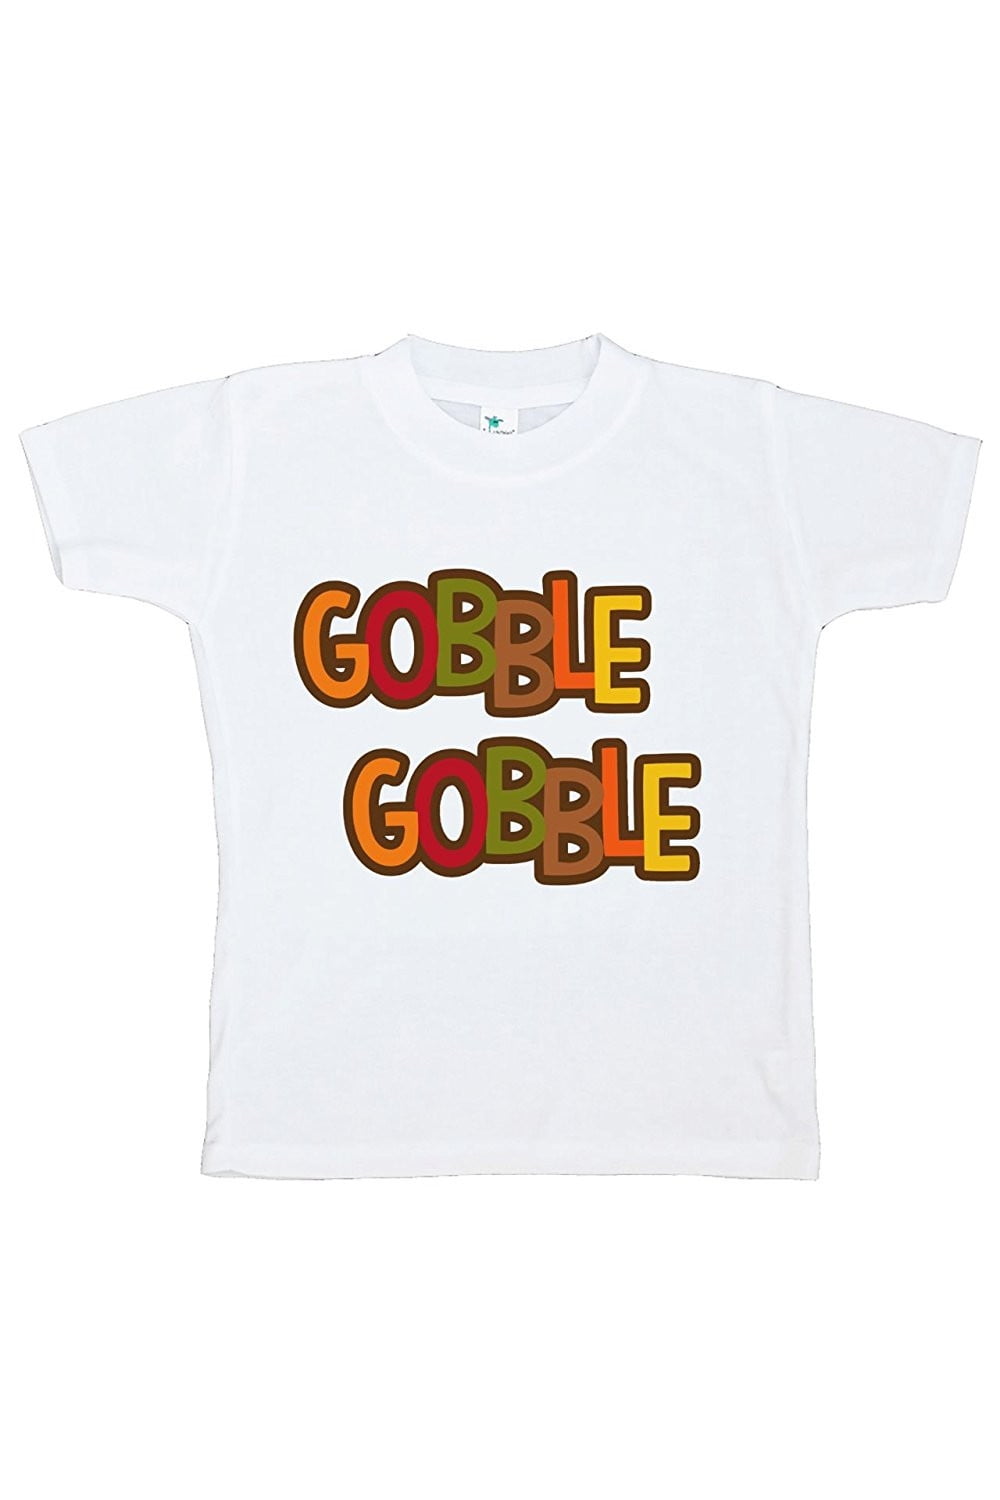 Gobble Gobble Thanksgiving Custom Tee!